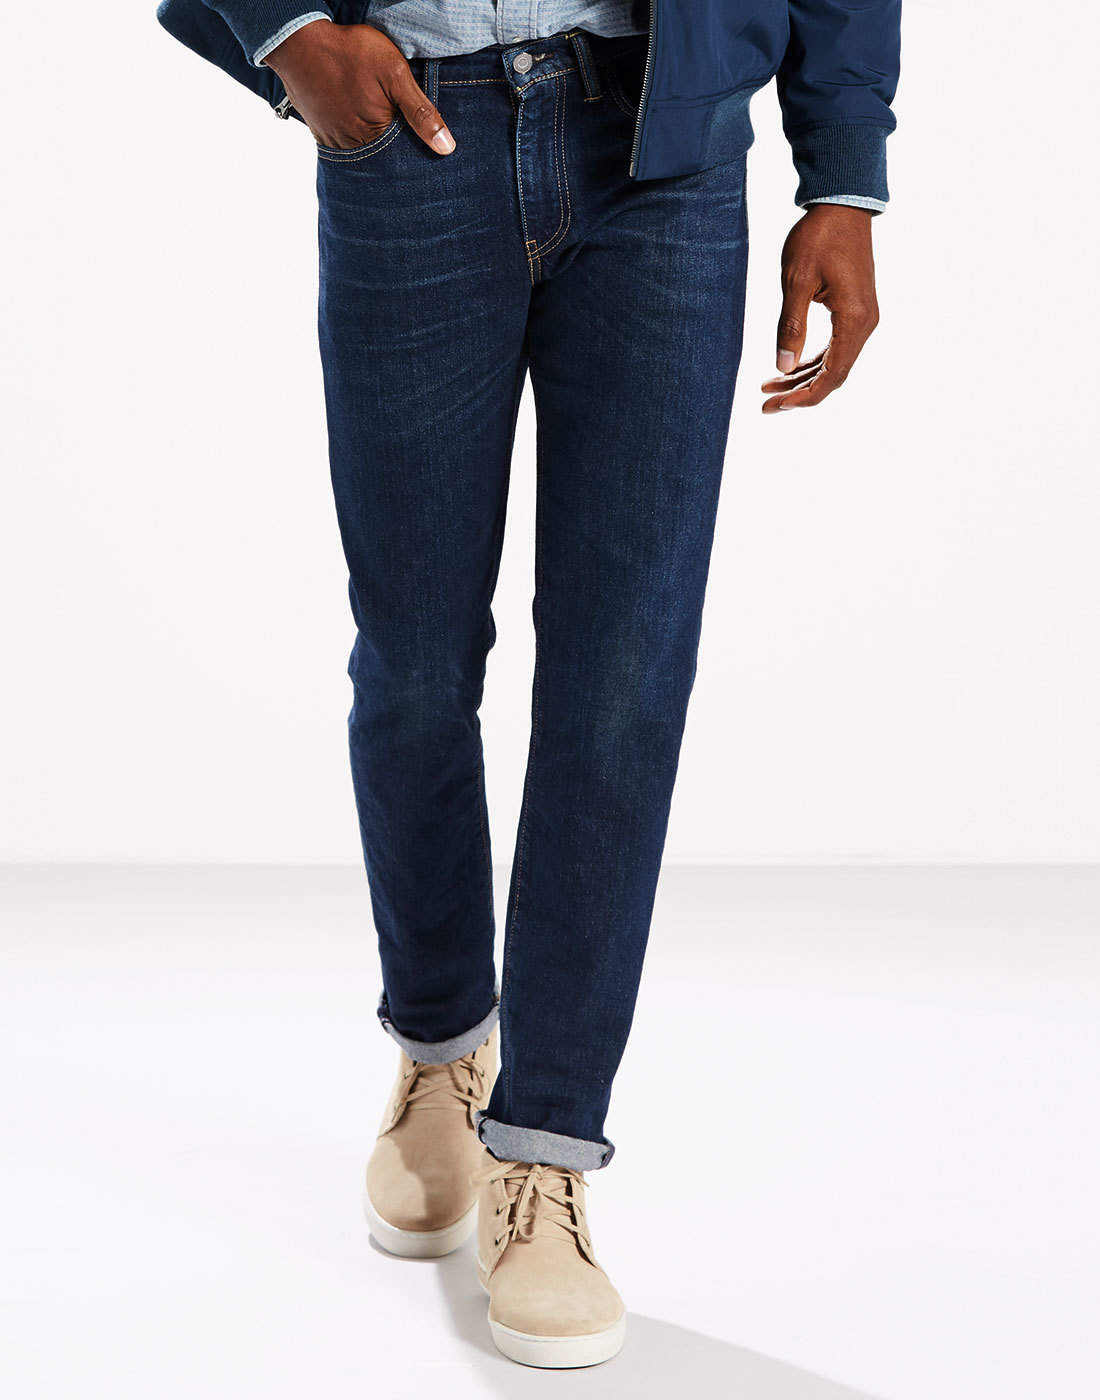 LEVI'S® 511 Men's Retro Mod Slim Denim Jeans in Vintage Heart